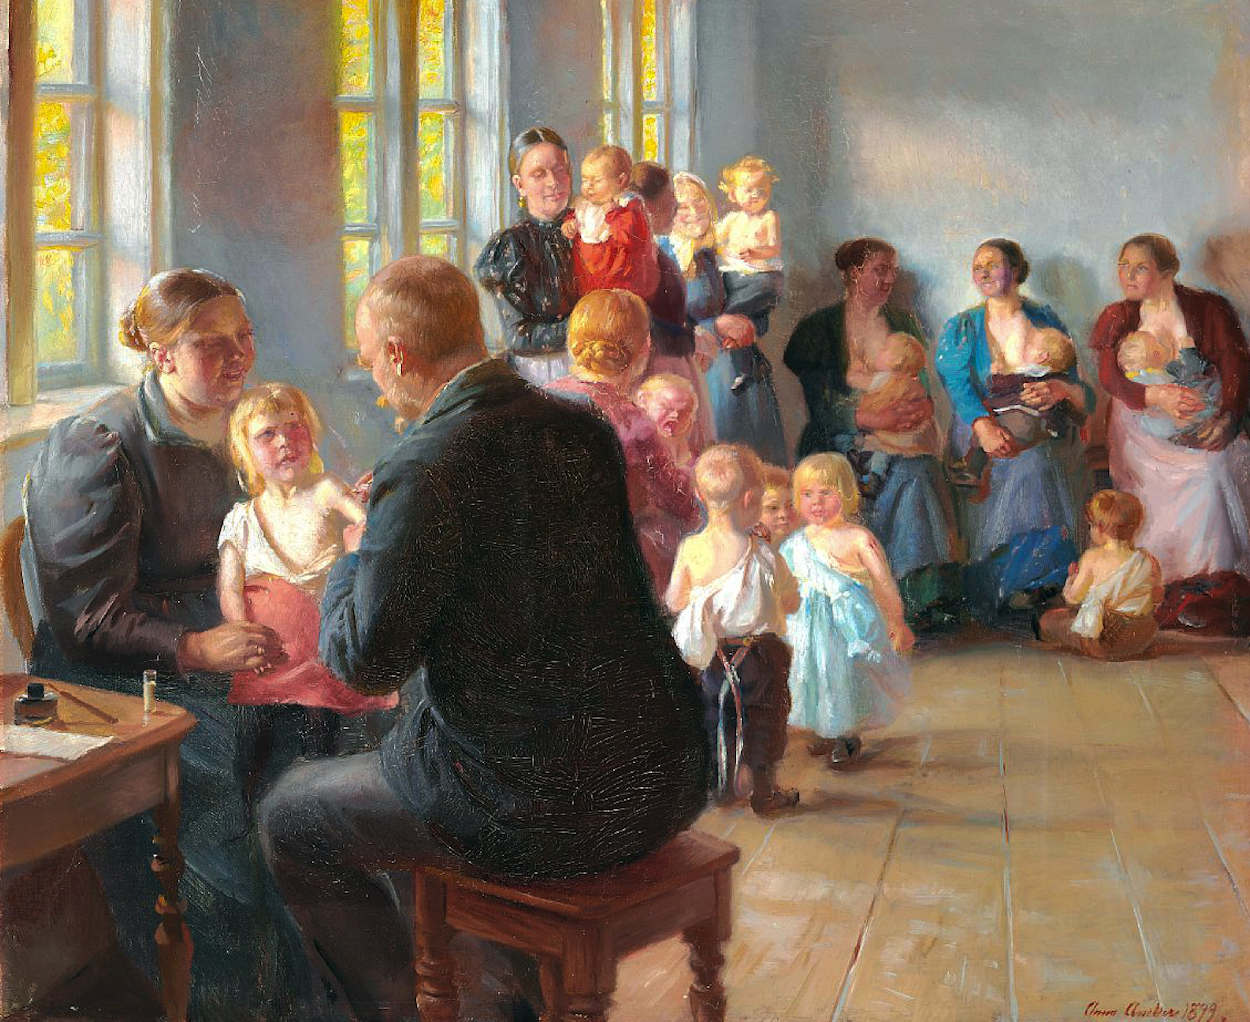 La vaccination by Anna Ancher - 1899 